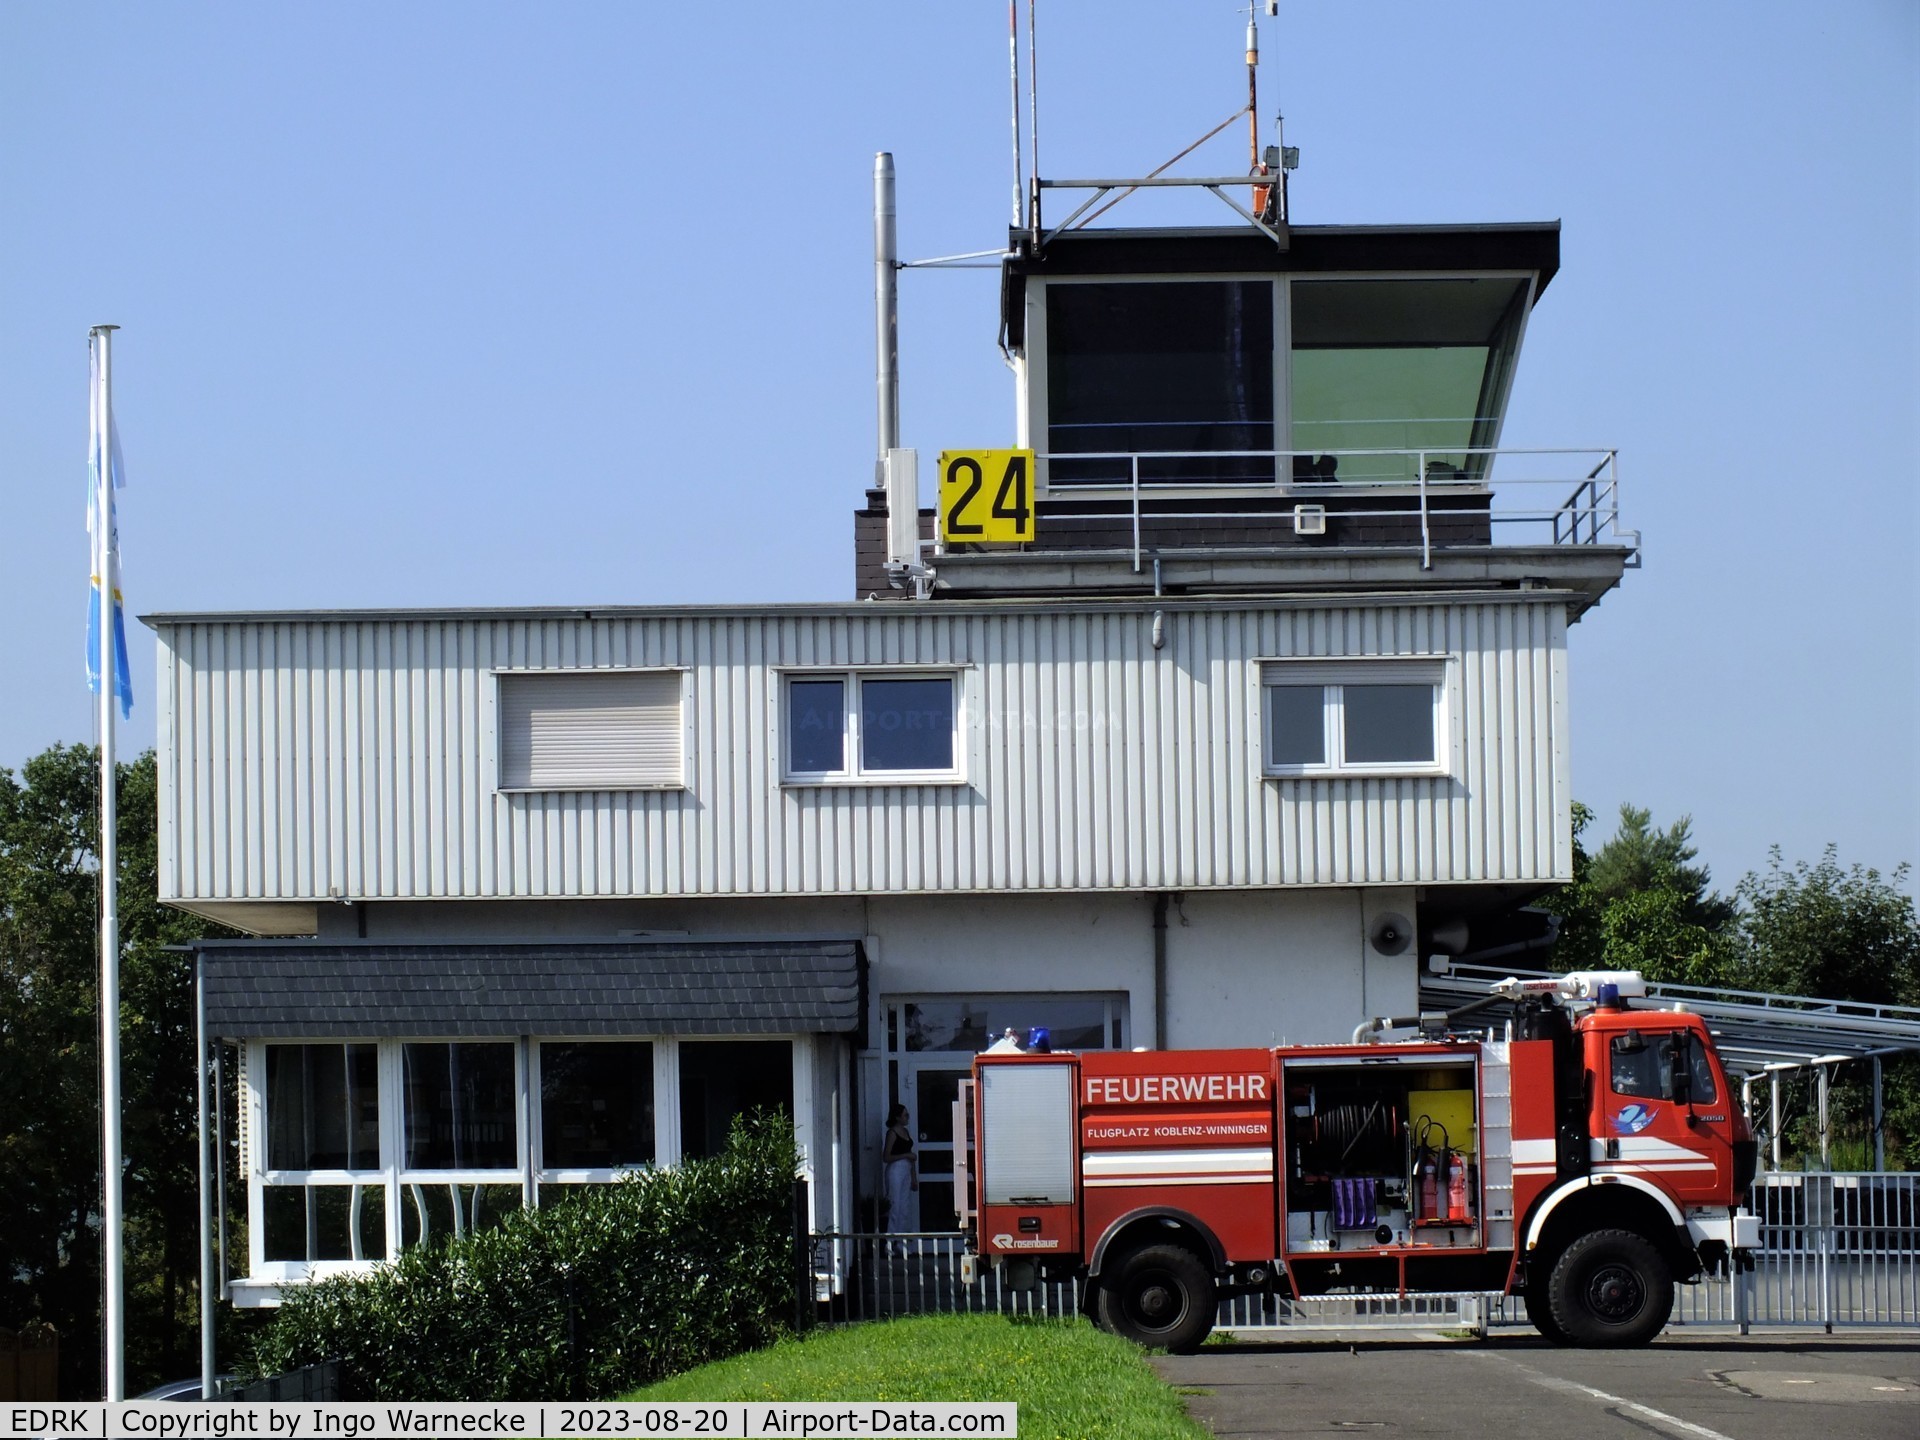 Koblenz Winningen Airport, Winningen, Mosel Germany (EDRK) - tower and terminal at Koblenz-Winningen airfield